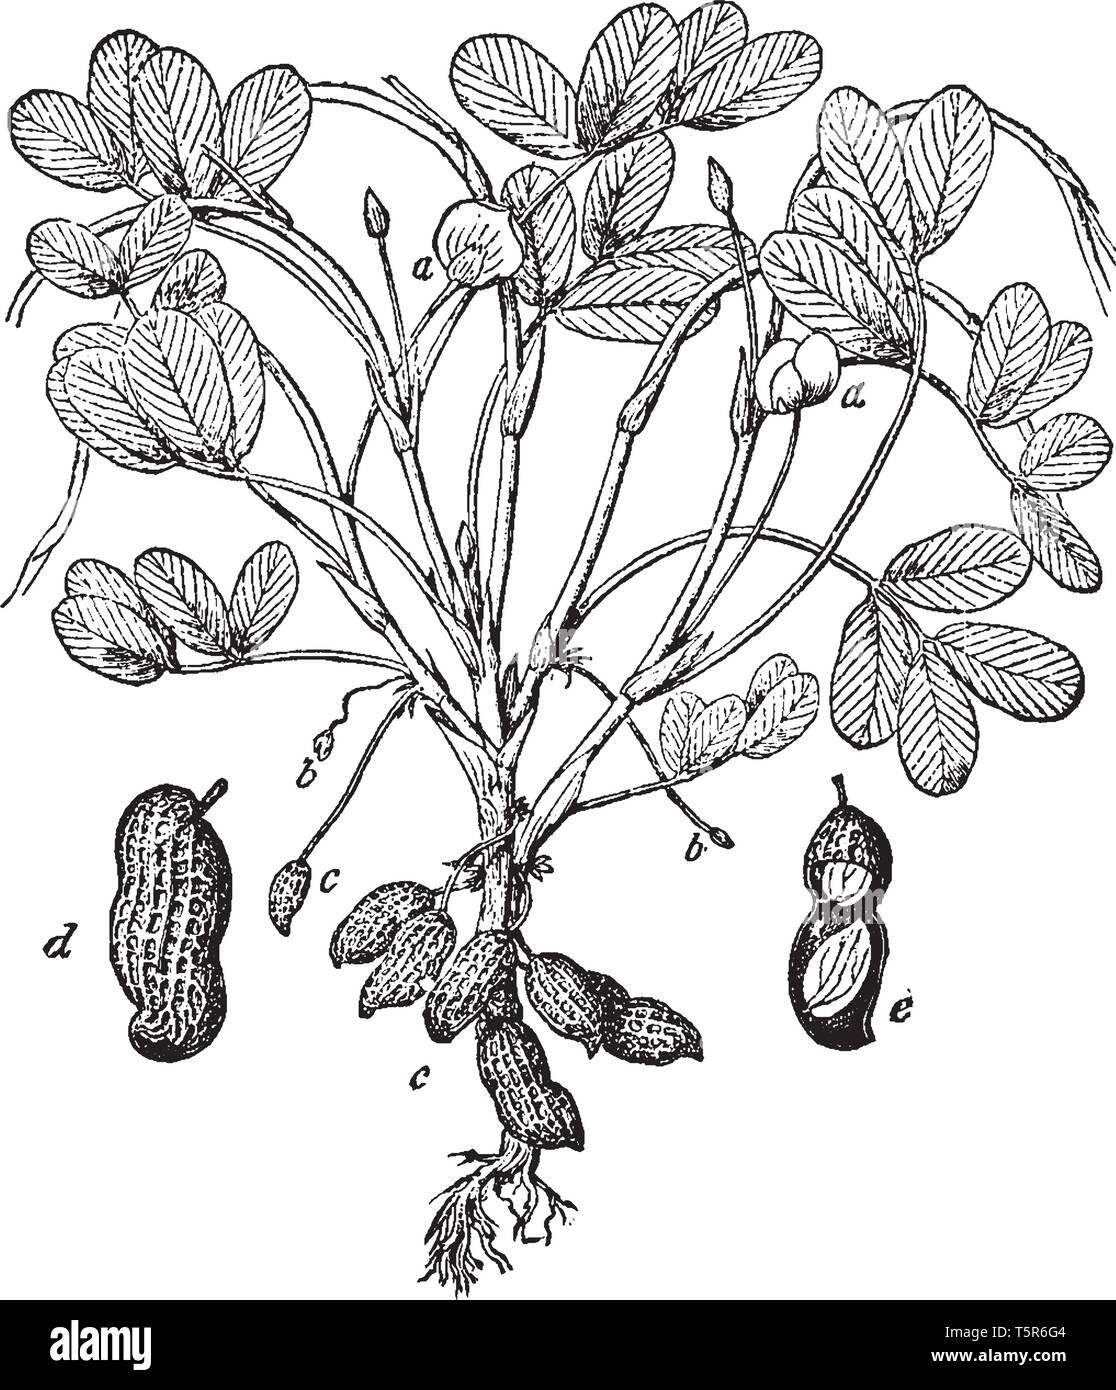 Una foto che mostra le diverse parti del comune impianto di arachidi noto anche come Arachis hypogaea. Le parti sono un fiore, ovaie, etc, vintage line dr Illustrazione Vettoriale